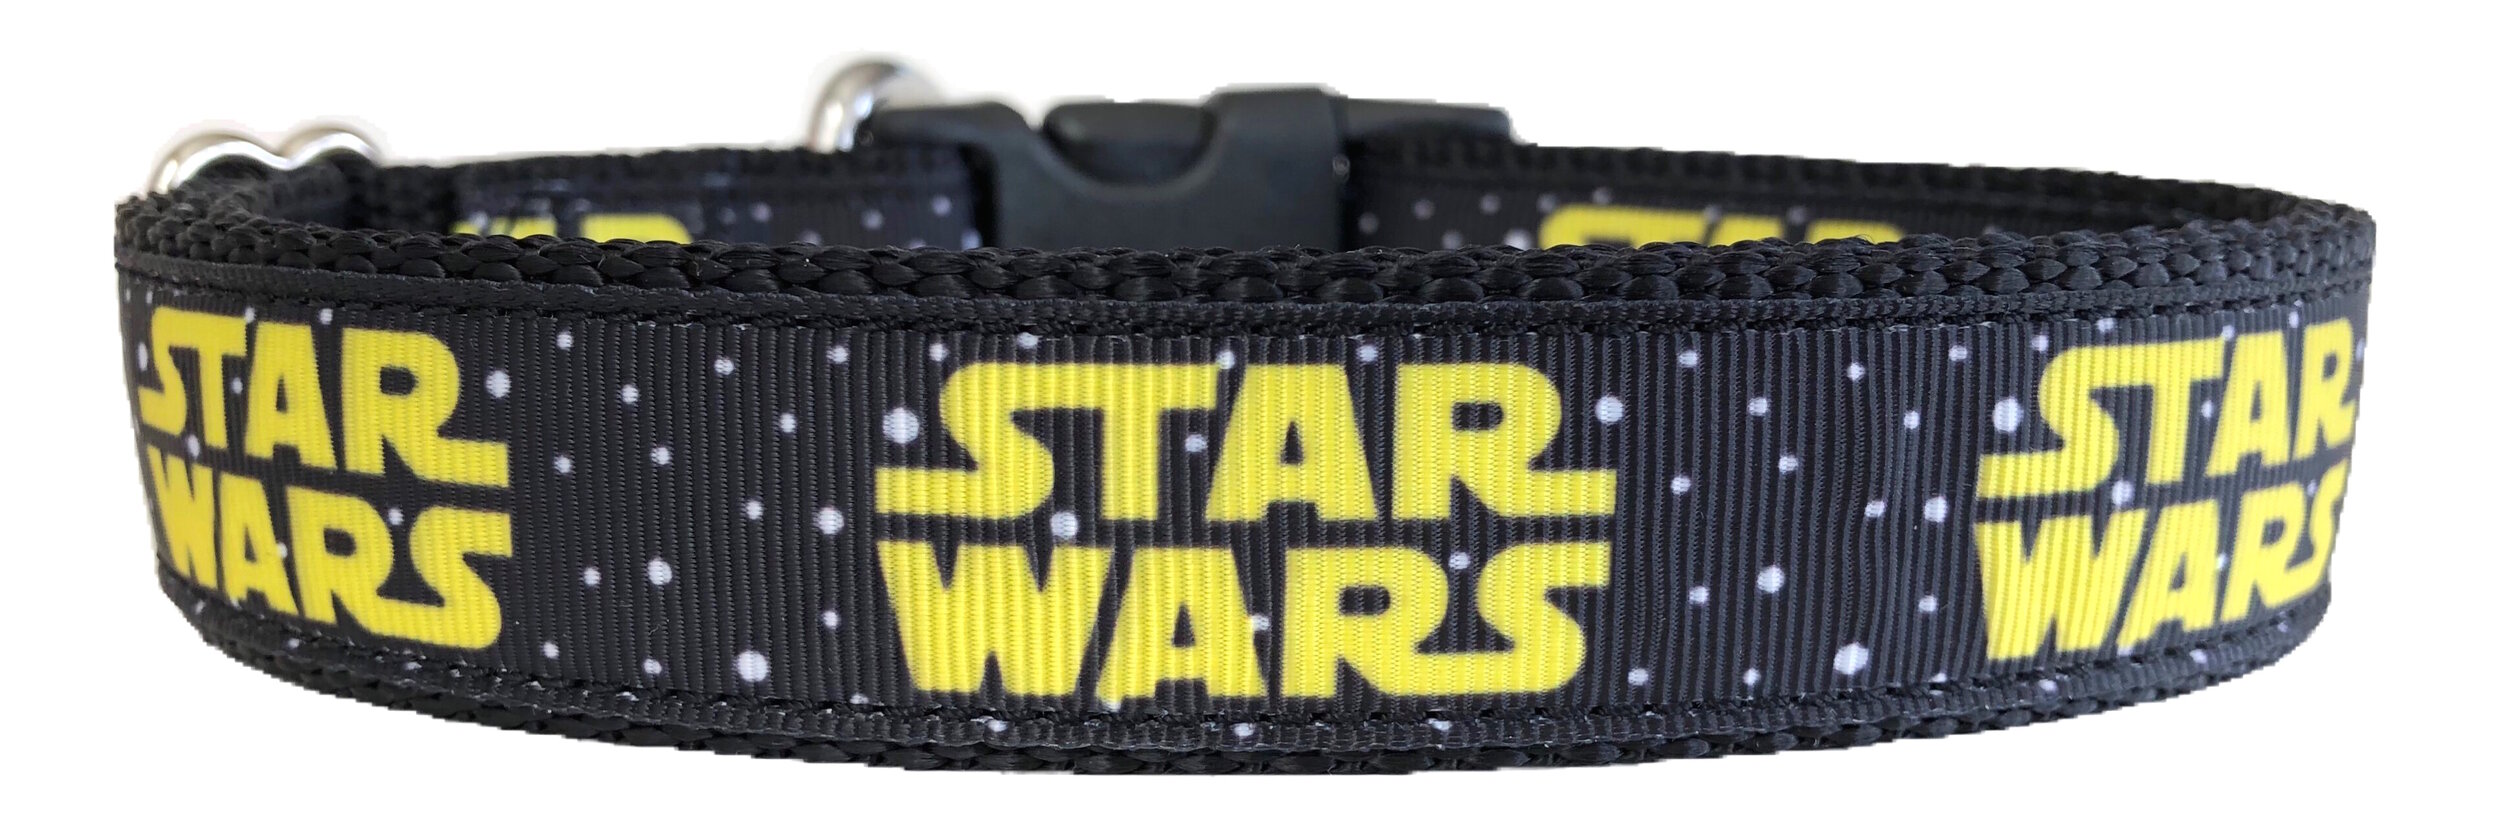 star wars dog collar